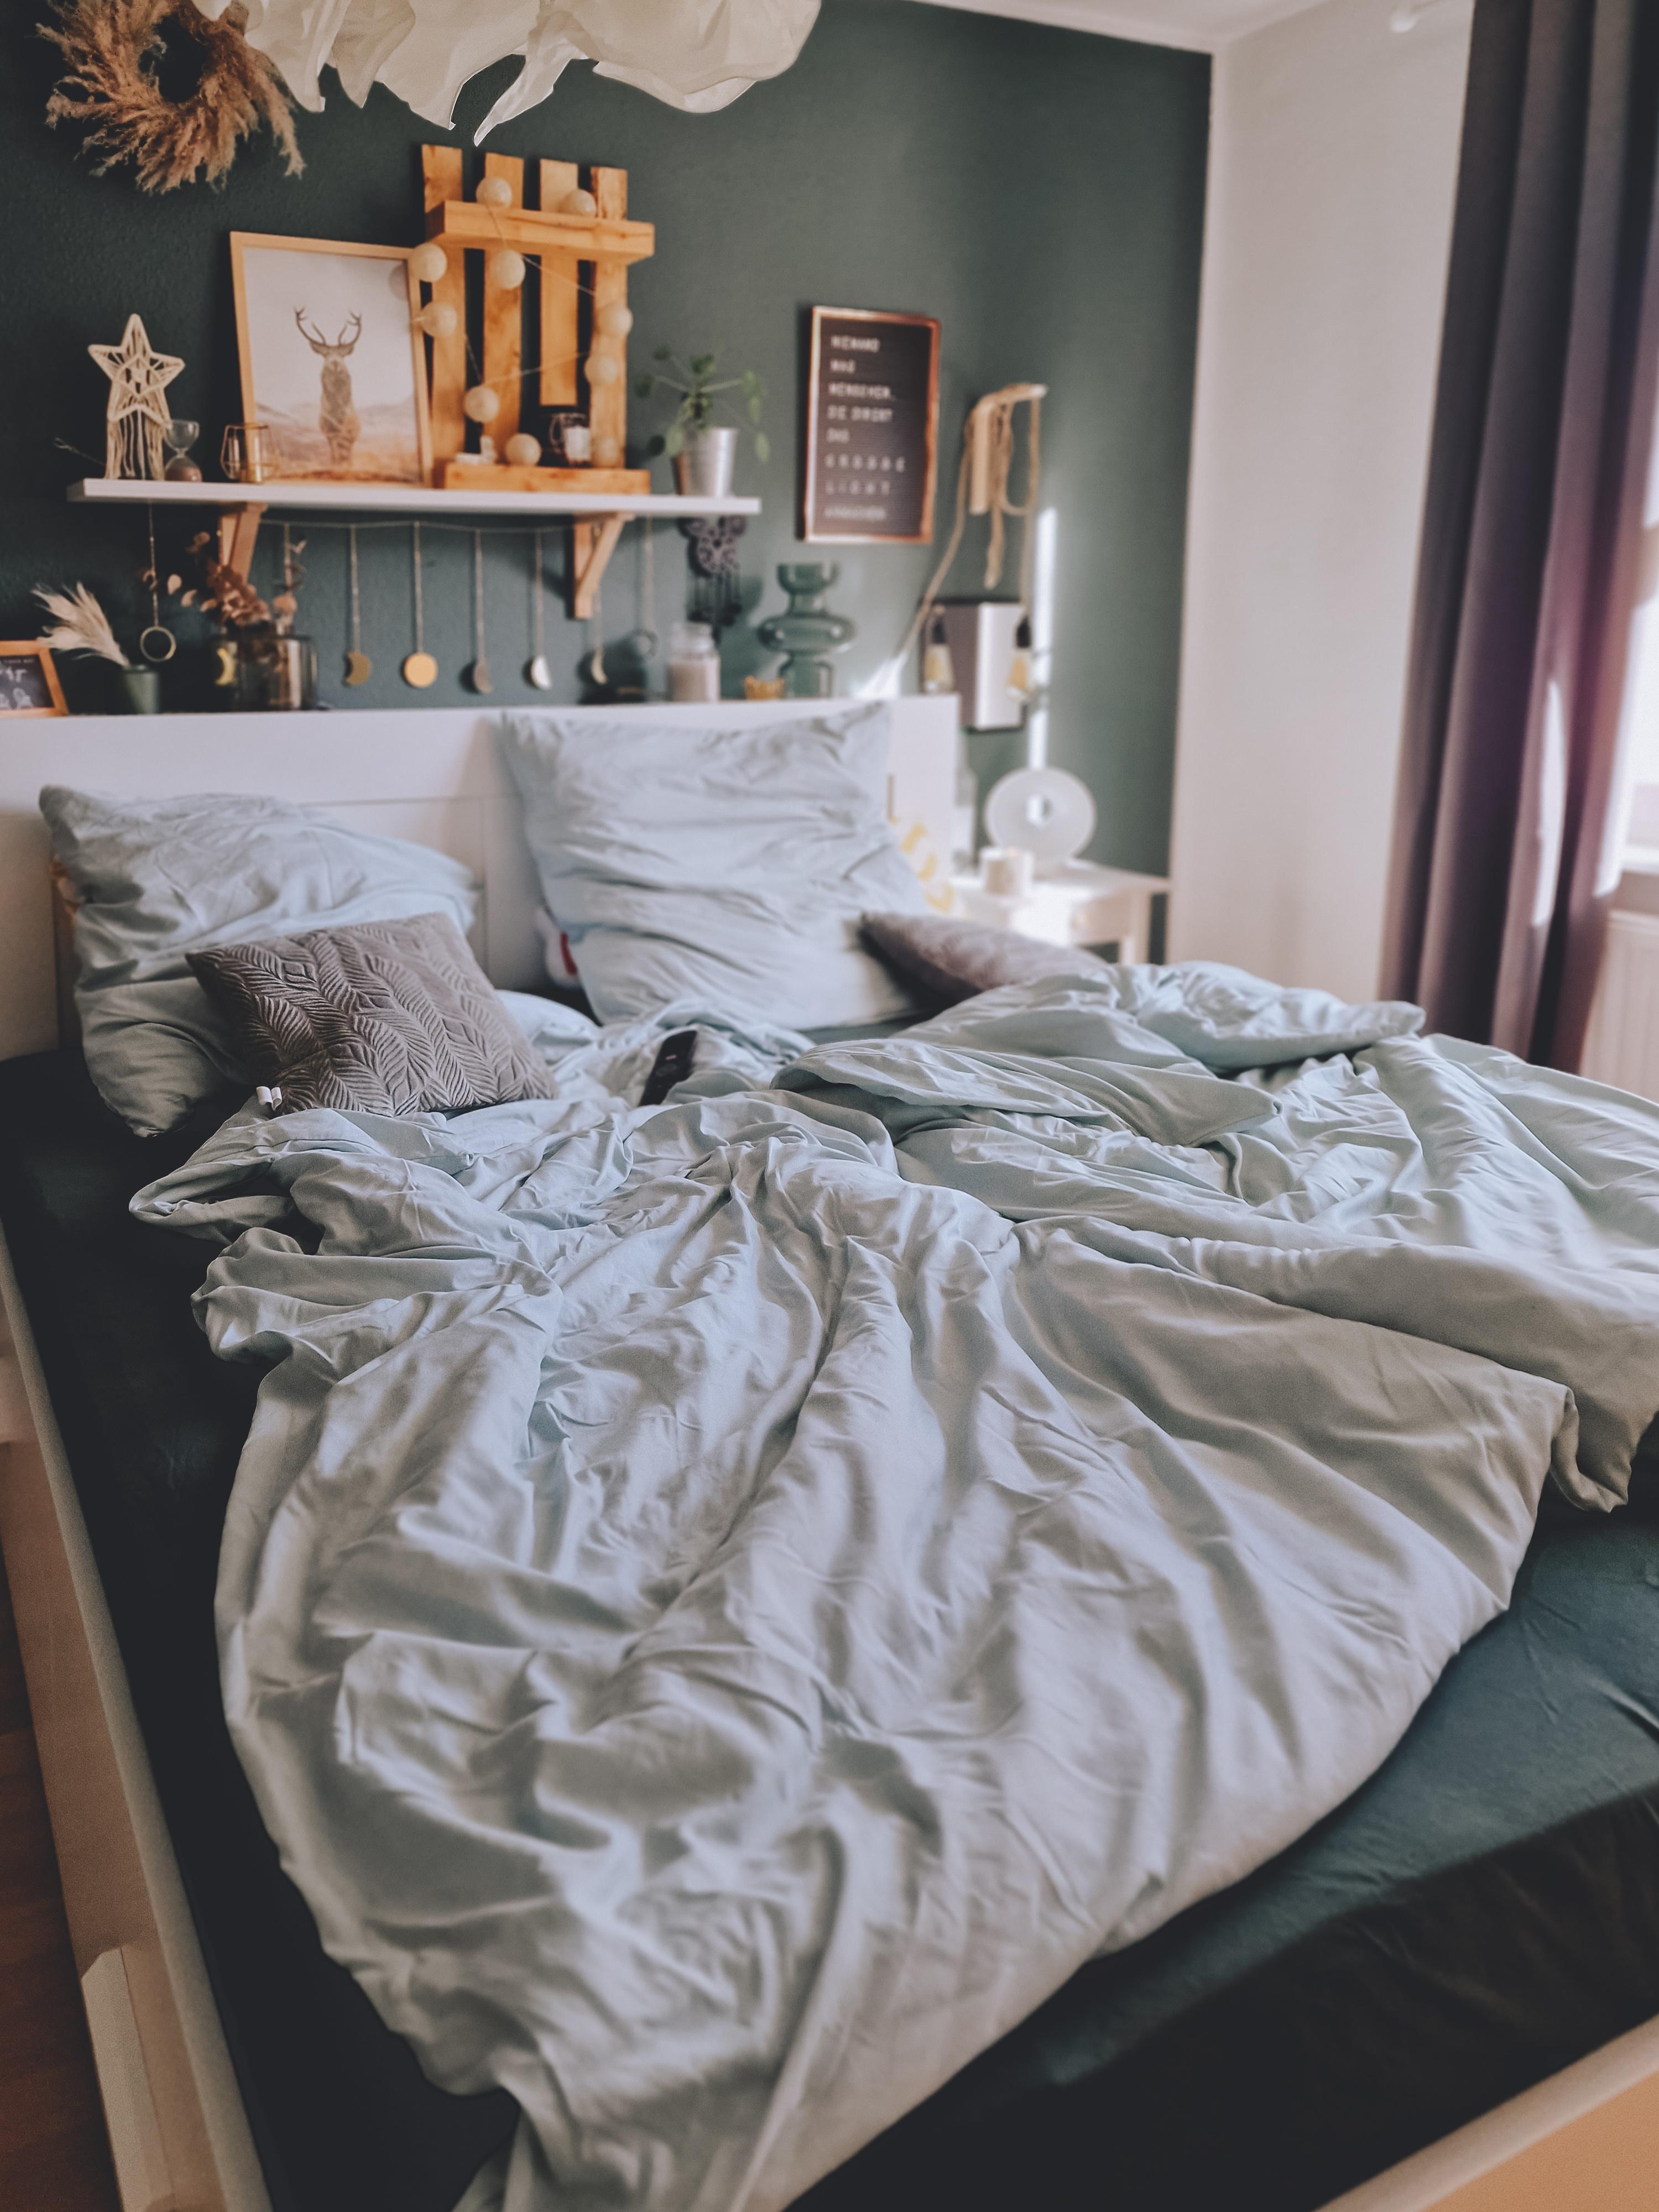 Sonntag ist Gammeltag #Schlafzimmer #grün #wandgestaltung #boho #boholiebe #Bettwäsche #Bett #ikea #couchliebt 